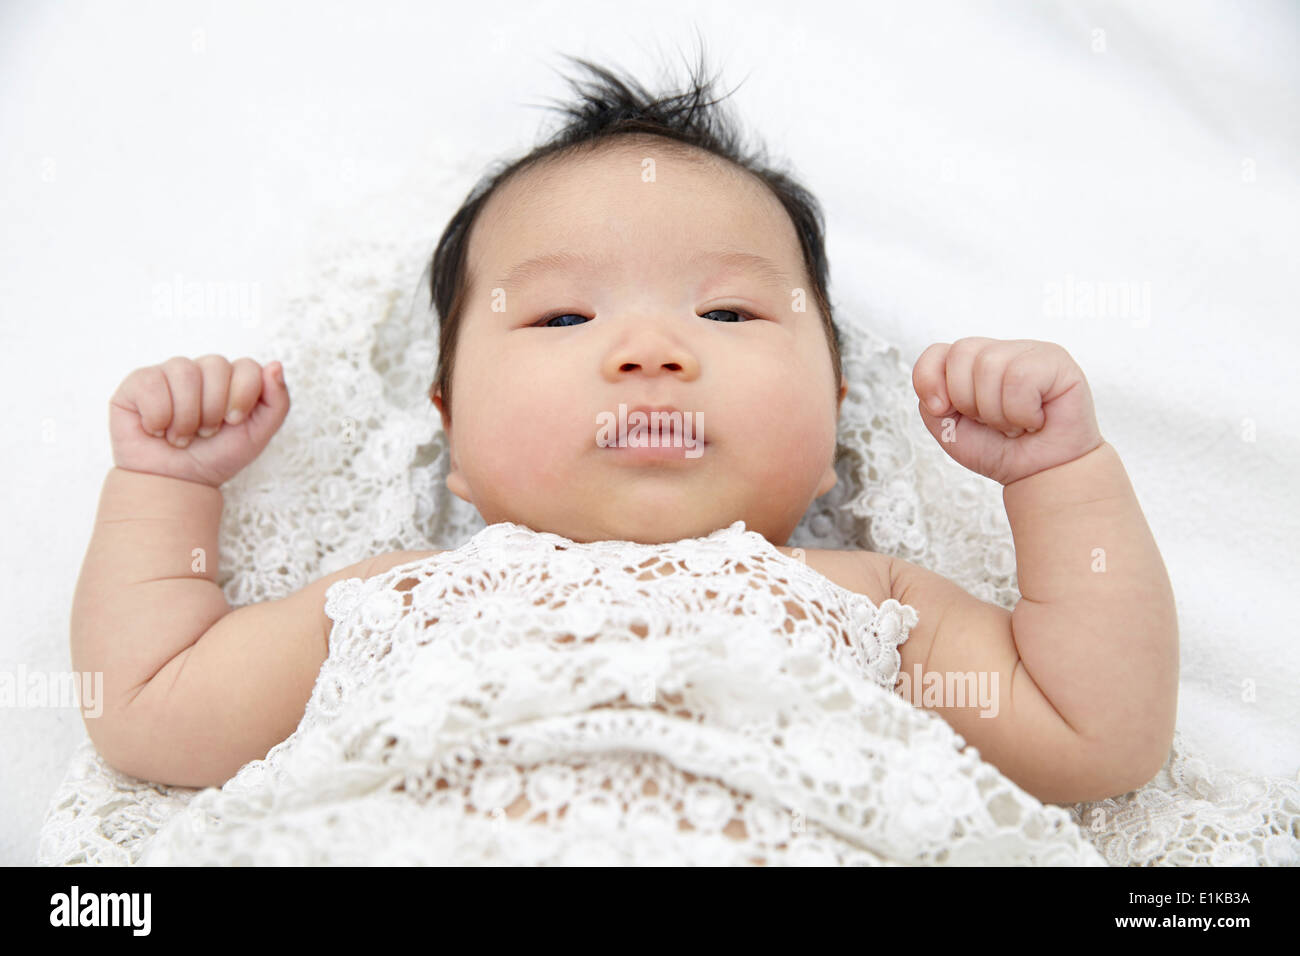 MODEL Release Babymädchen liegend mit geballten Hand Porträt. Stockfoto